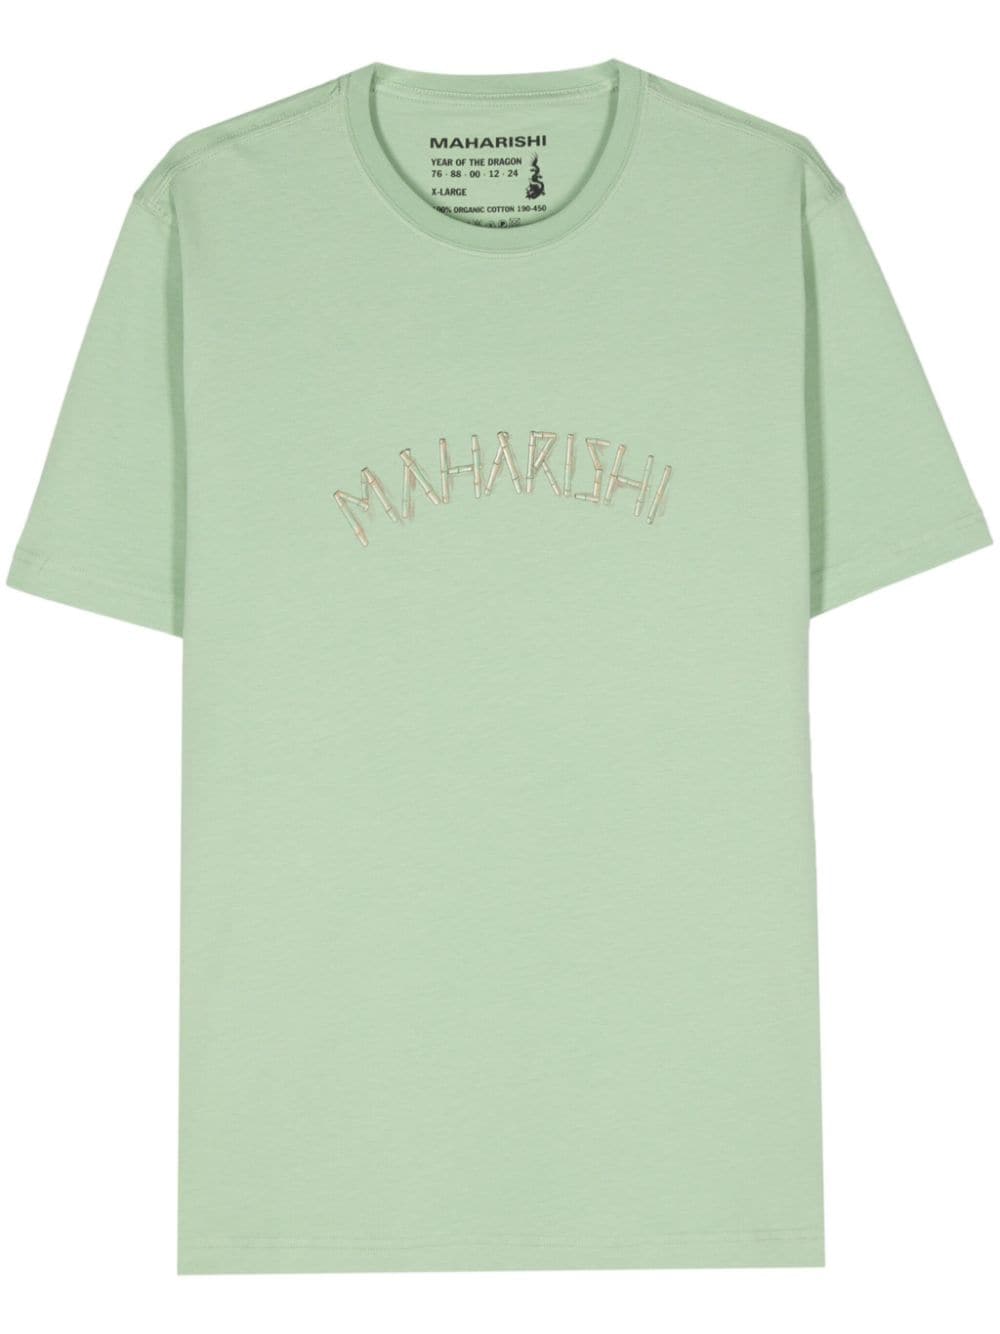 Maharishi Bamboo Construction cotton T-shirt - Green von Maharishi